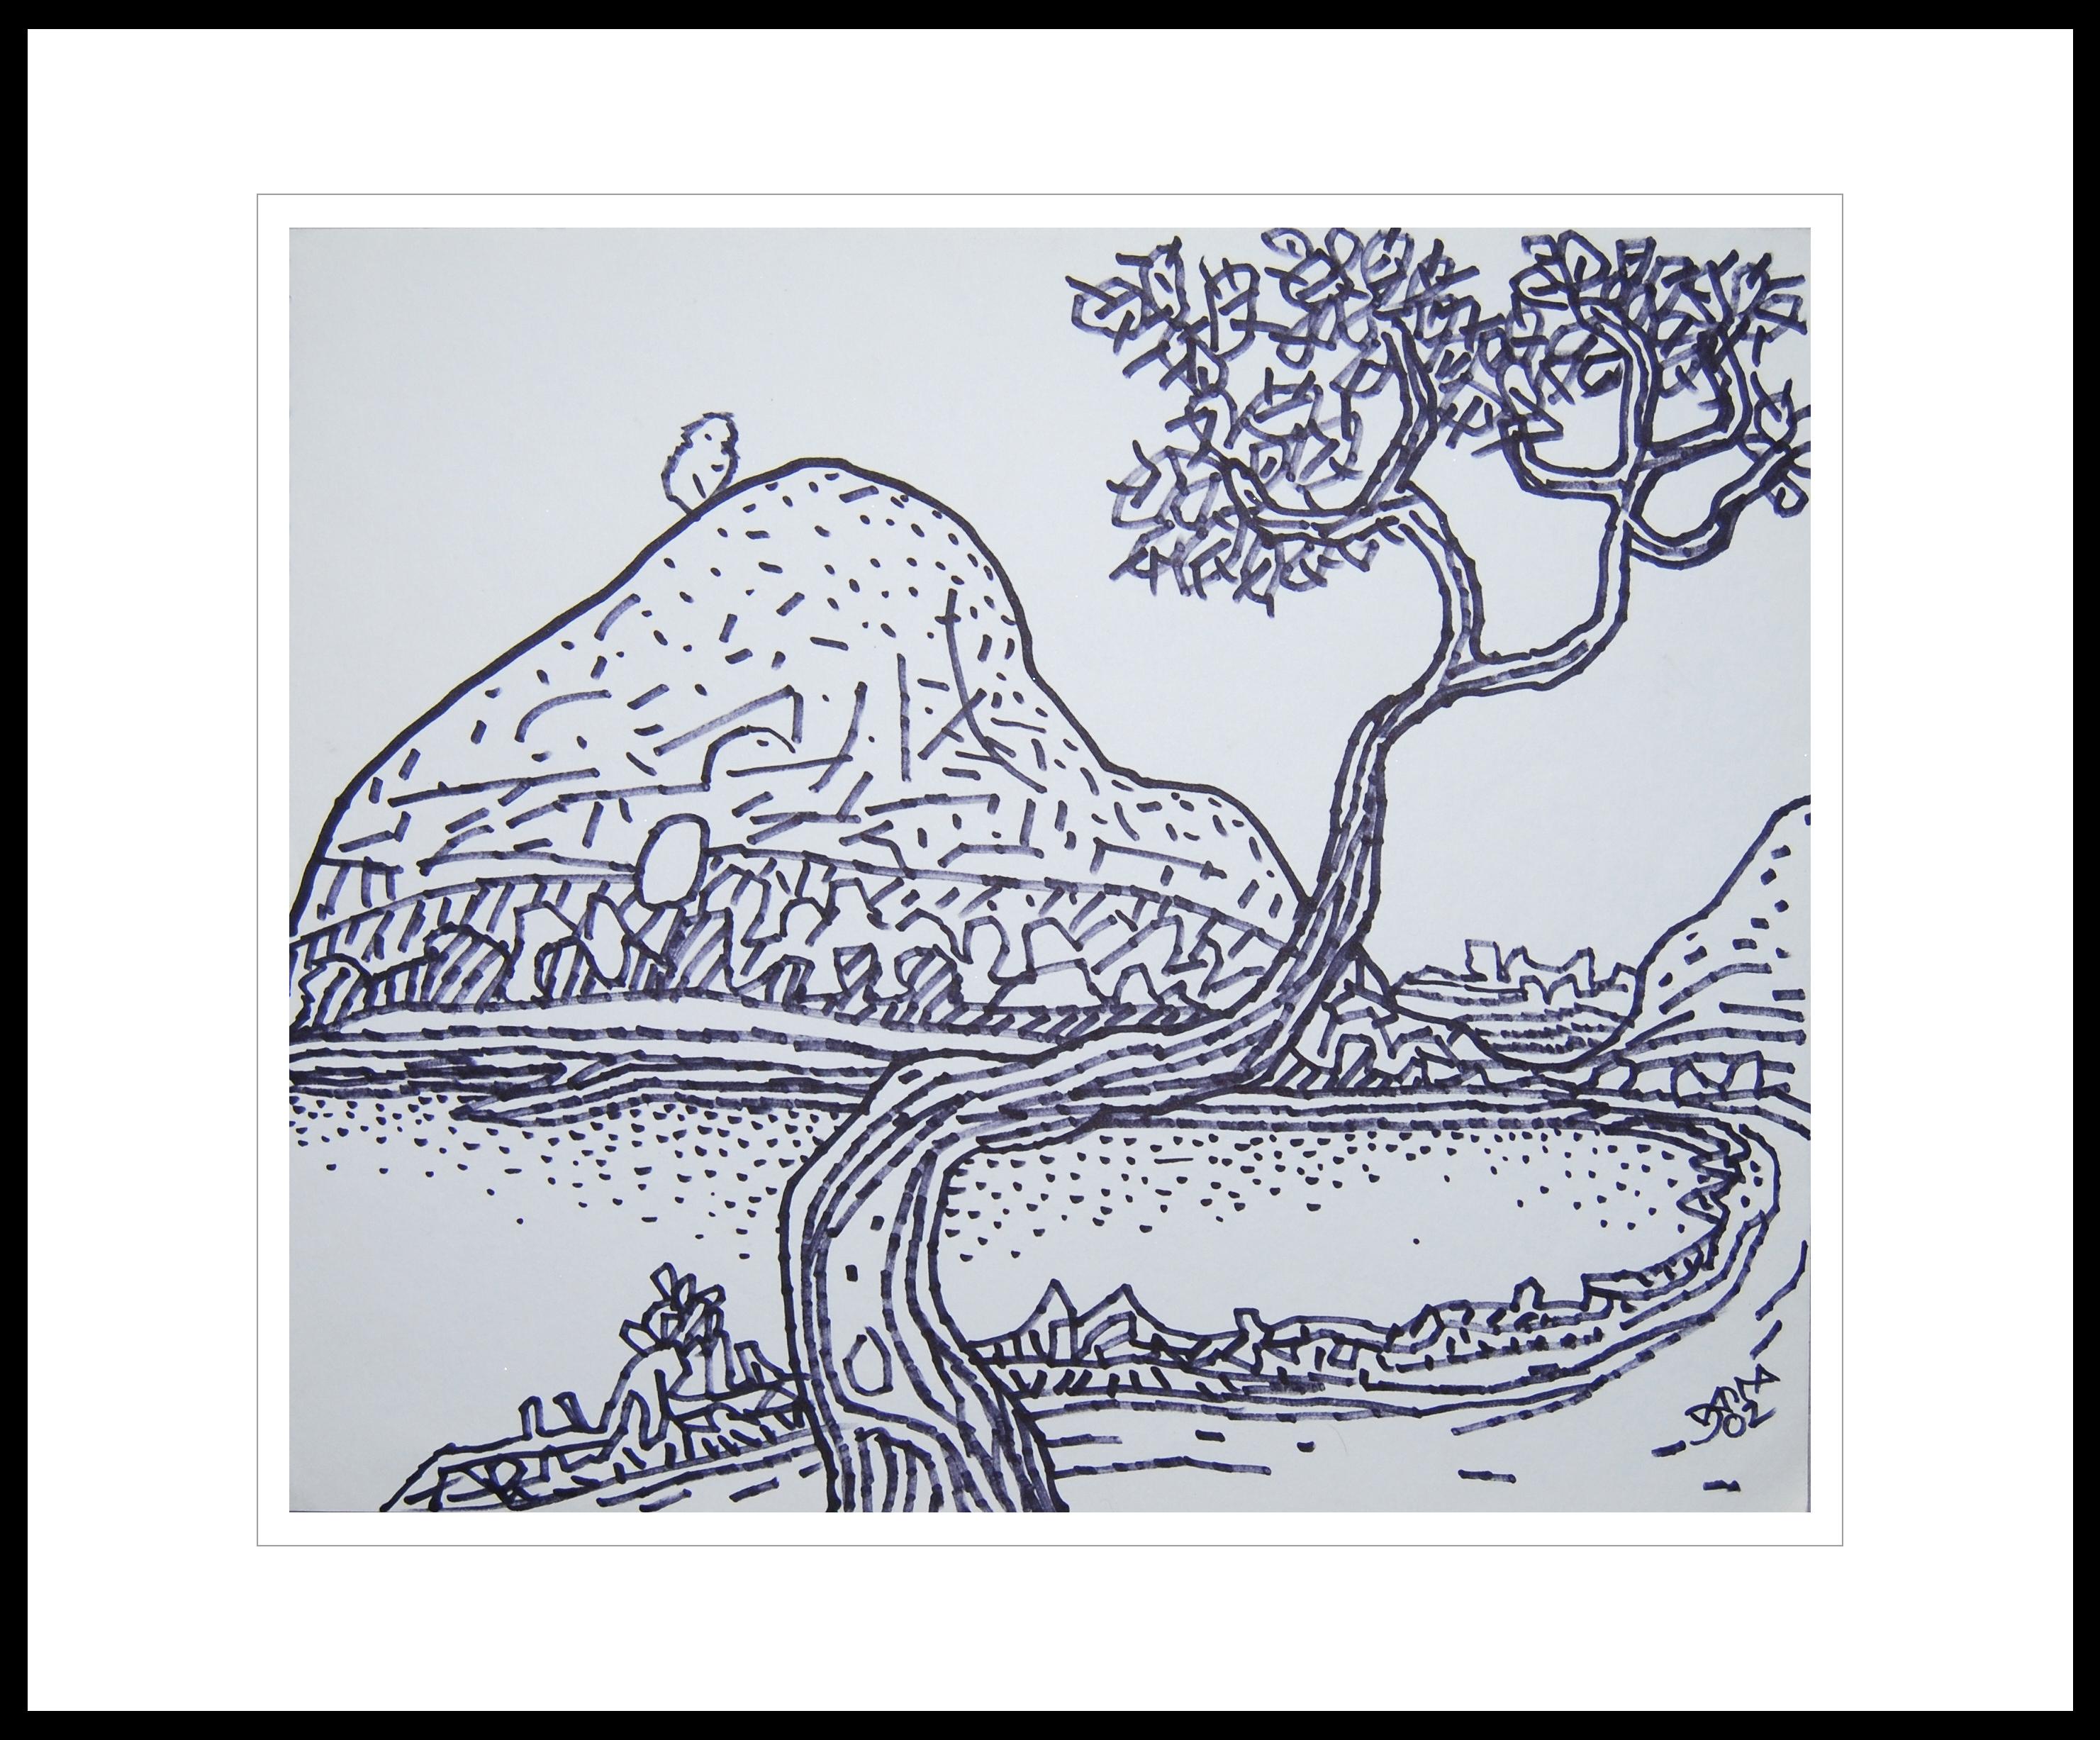 Prokash Karmakar Landscape Art - Landscape Drawing, Village Scenery, Ink on paper, Bengal Master Artist"In Stock"